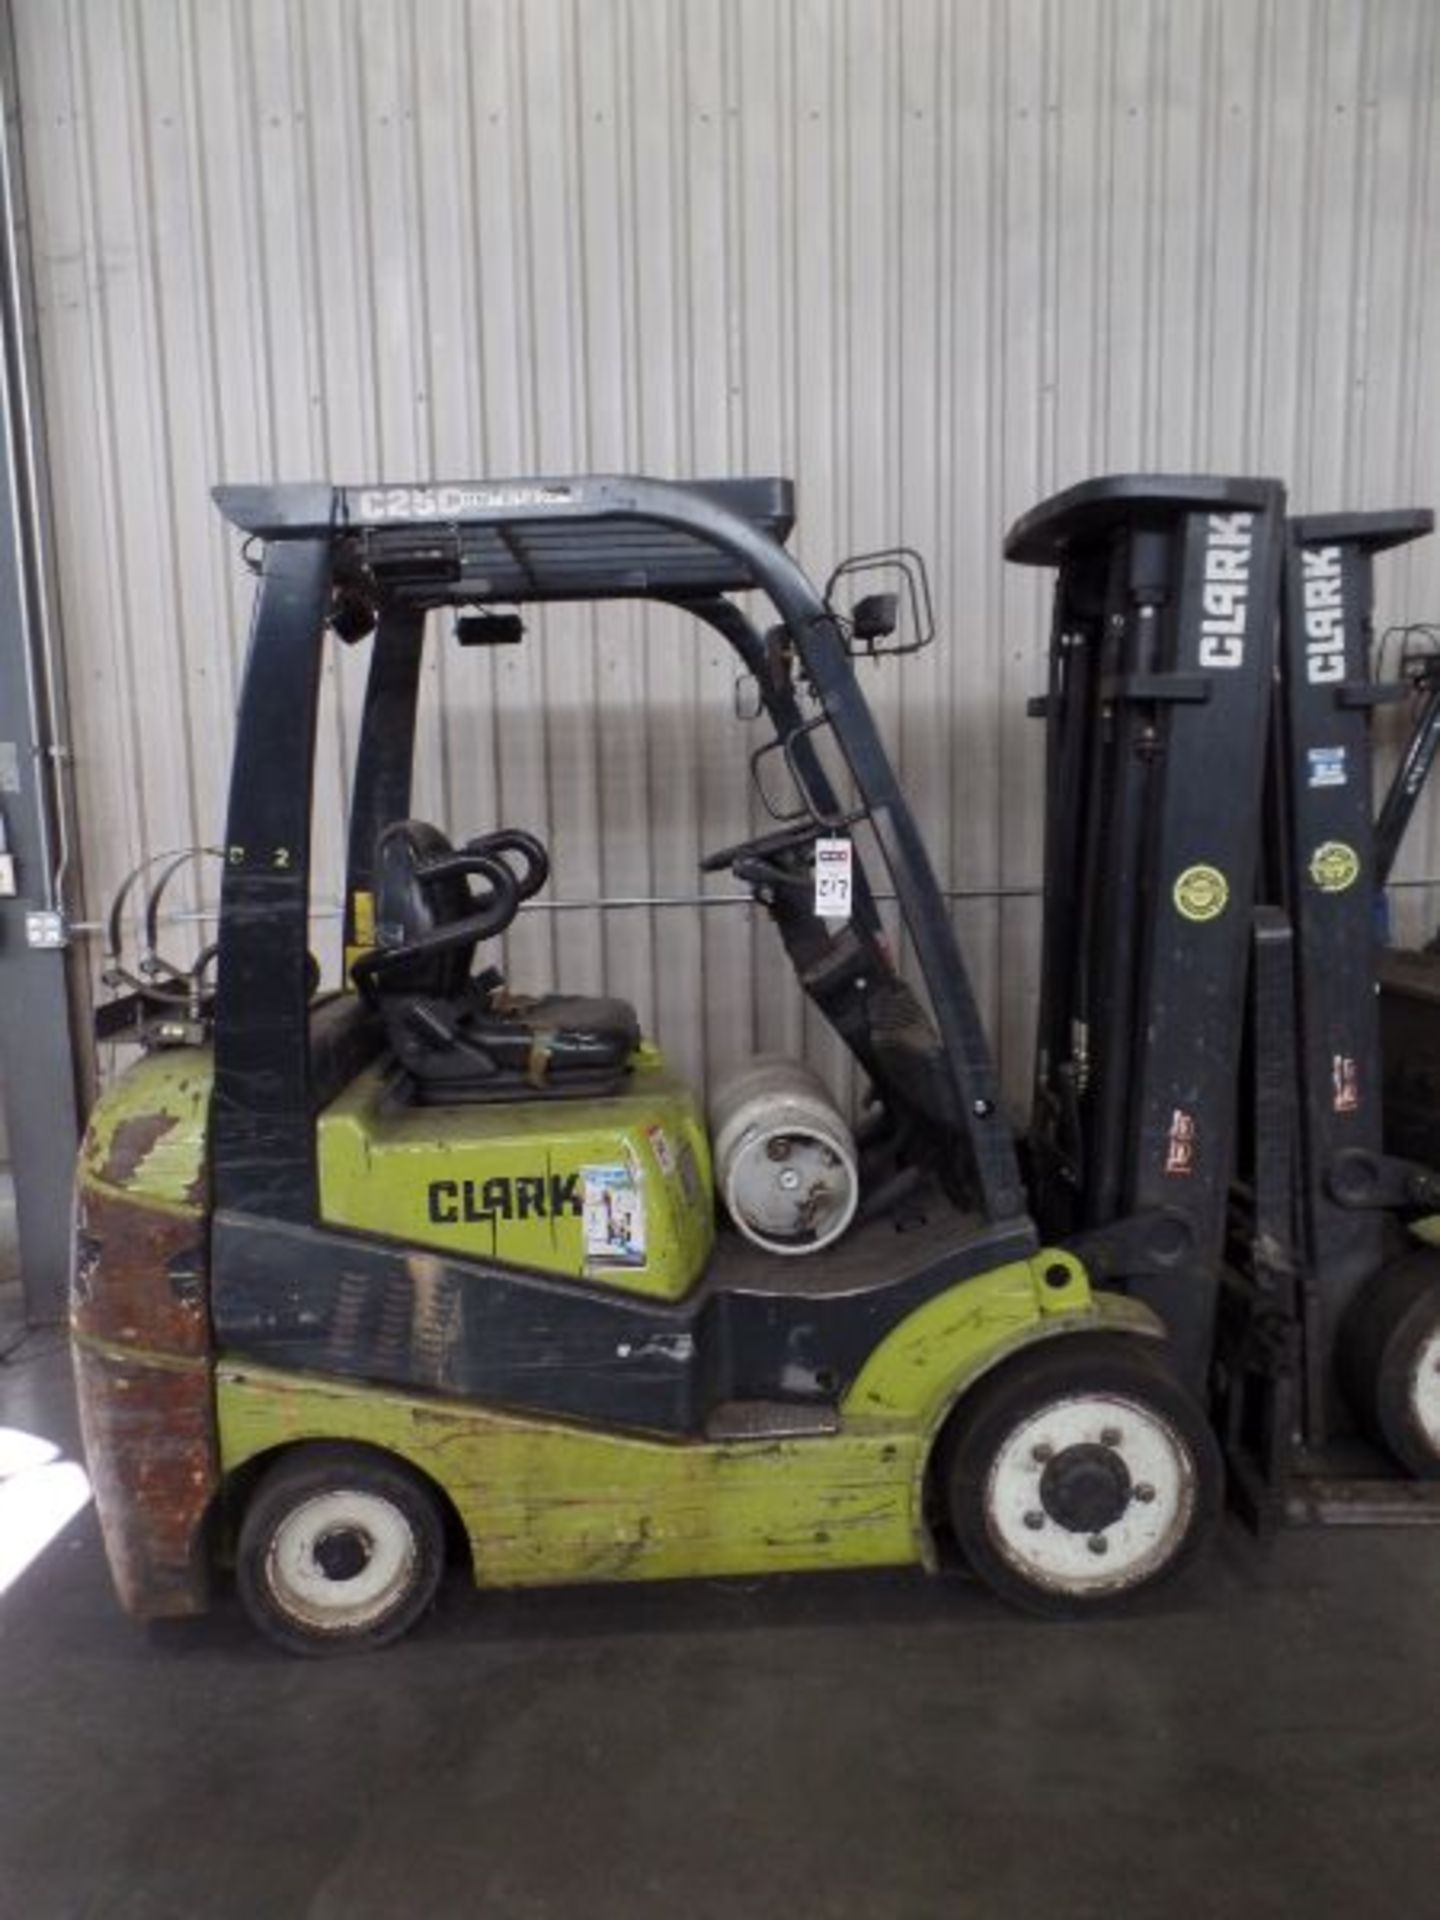 Clark C25 CL 4500lbs Cap. LPG Forklift, s/n C23200289588 *Needs Battery*